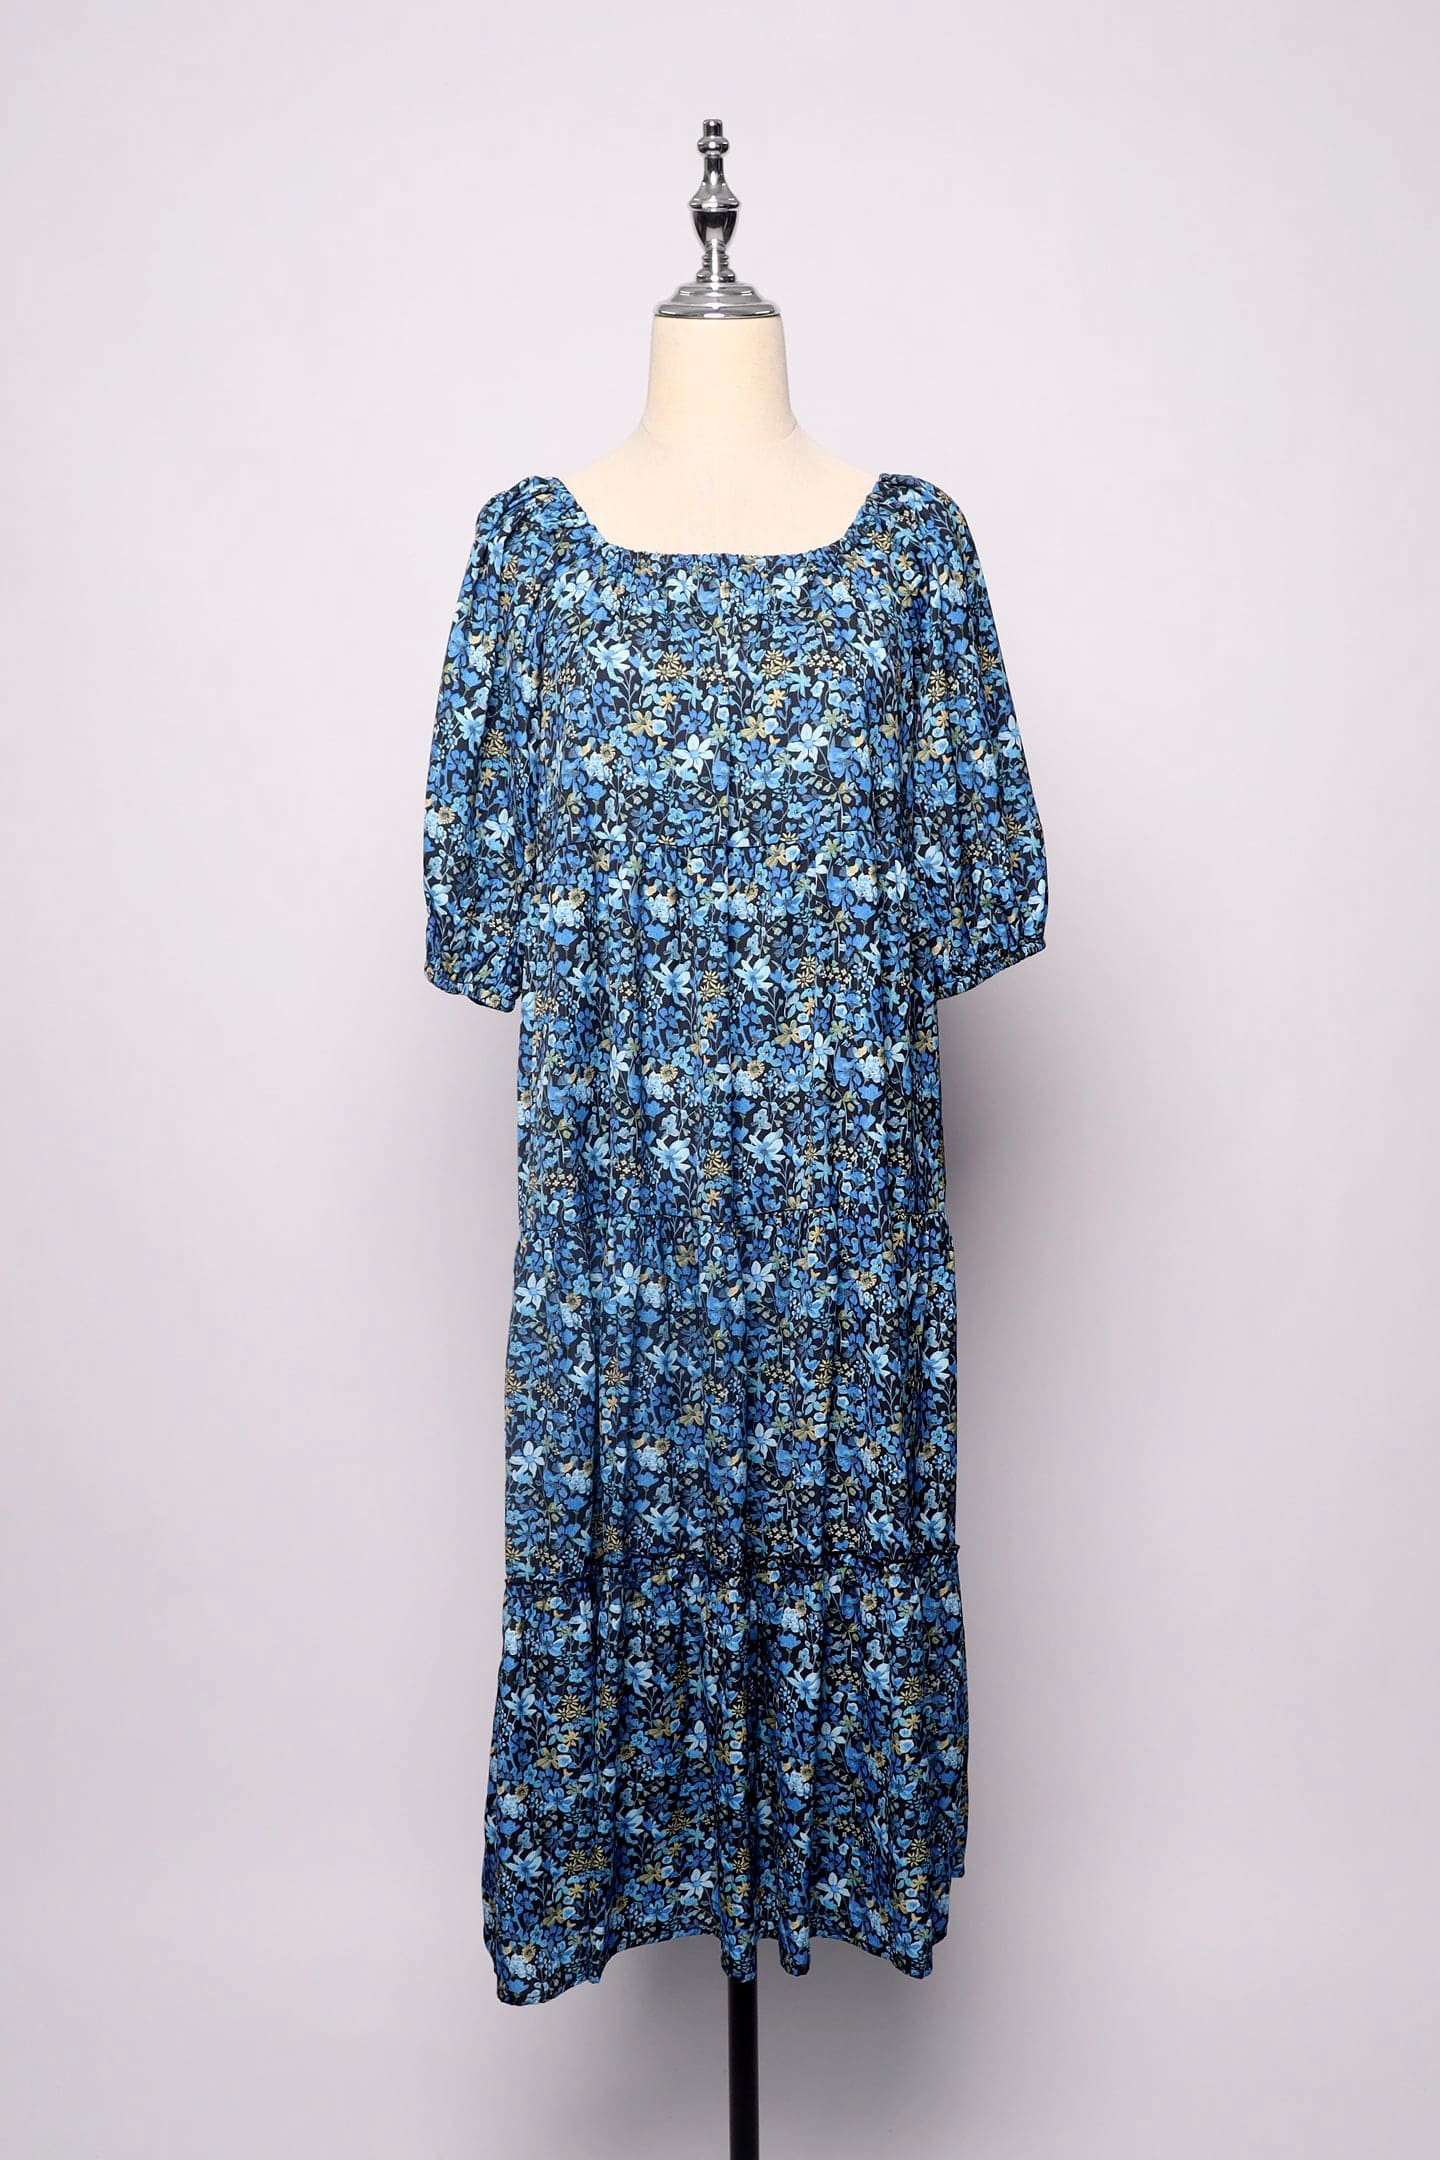 PO - Kerra Dress in Blue Bouquet